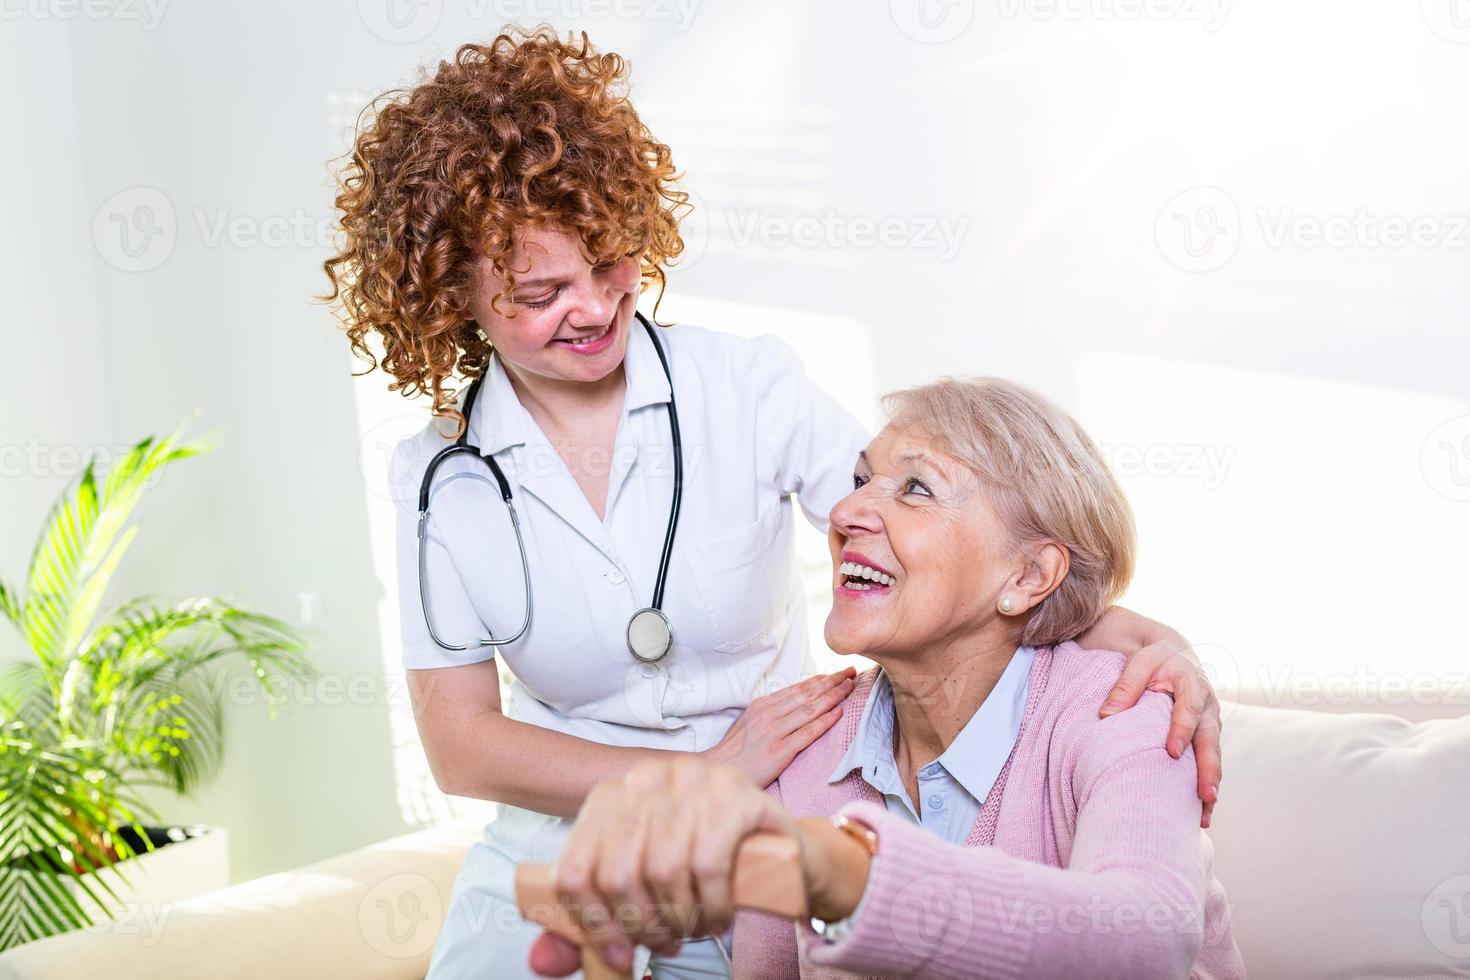 estrecha relación positiva entre el paciente mayor y el cuidador. feliz anciana hablando con un amable cuidador. joven bonita cuidadora y mujer mayor feliz foto